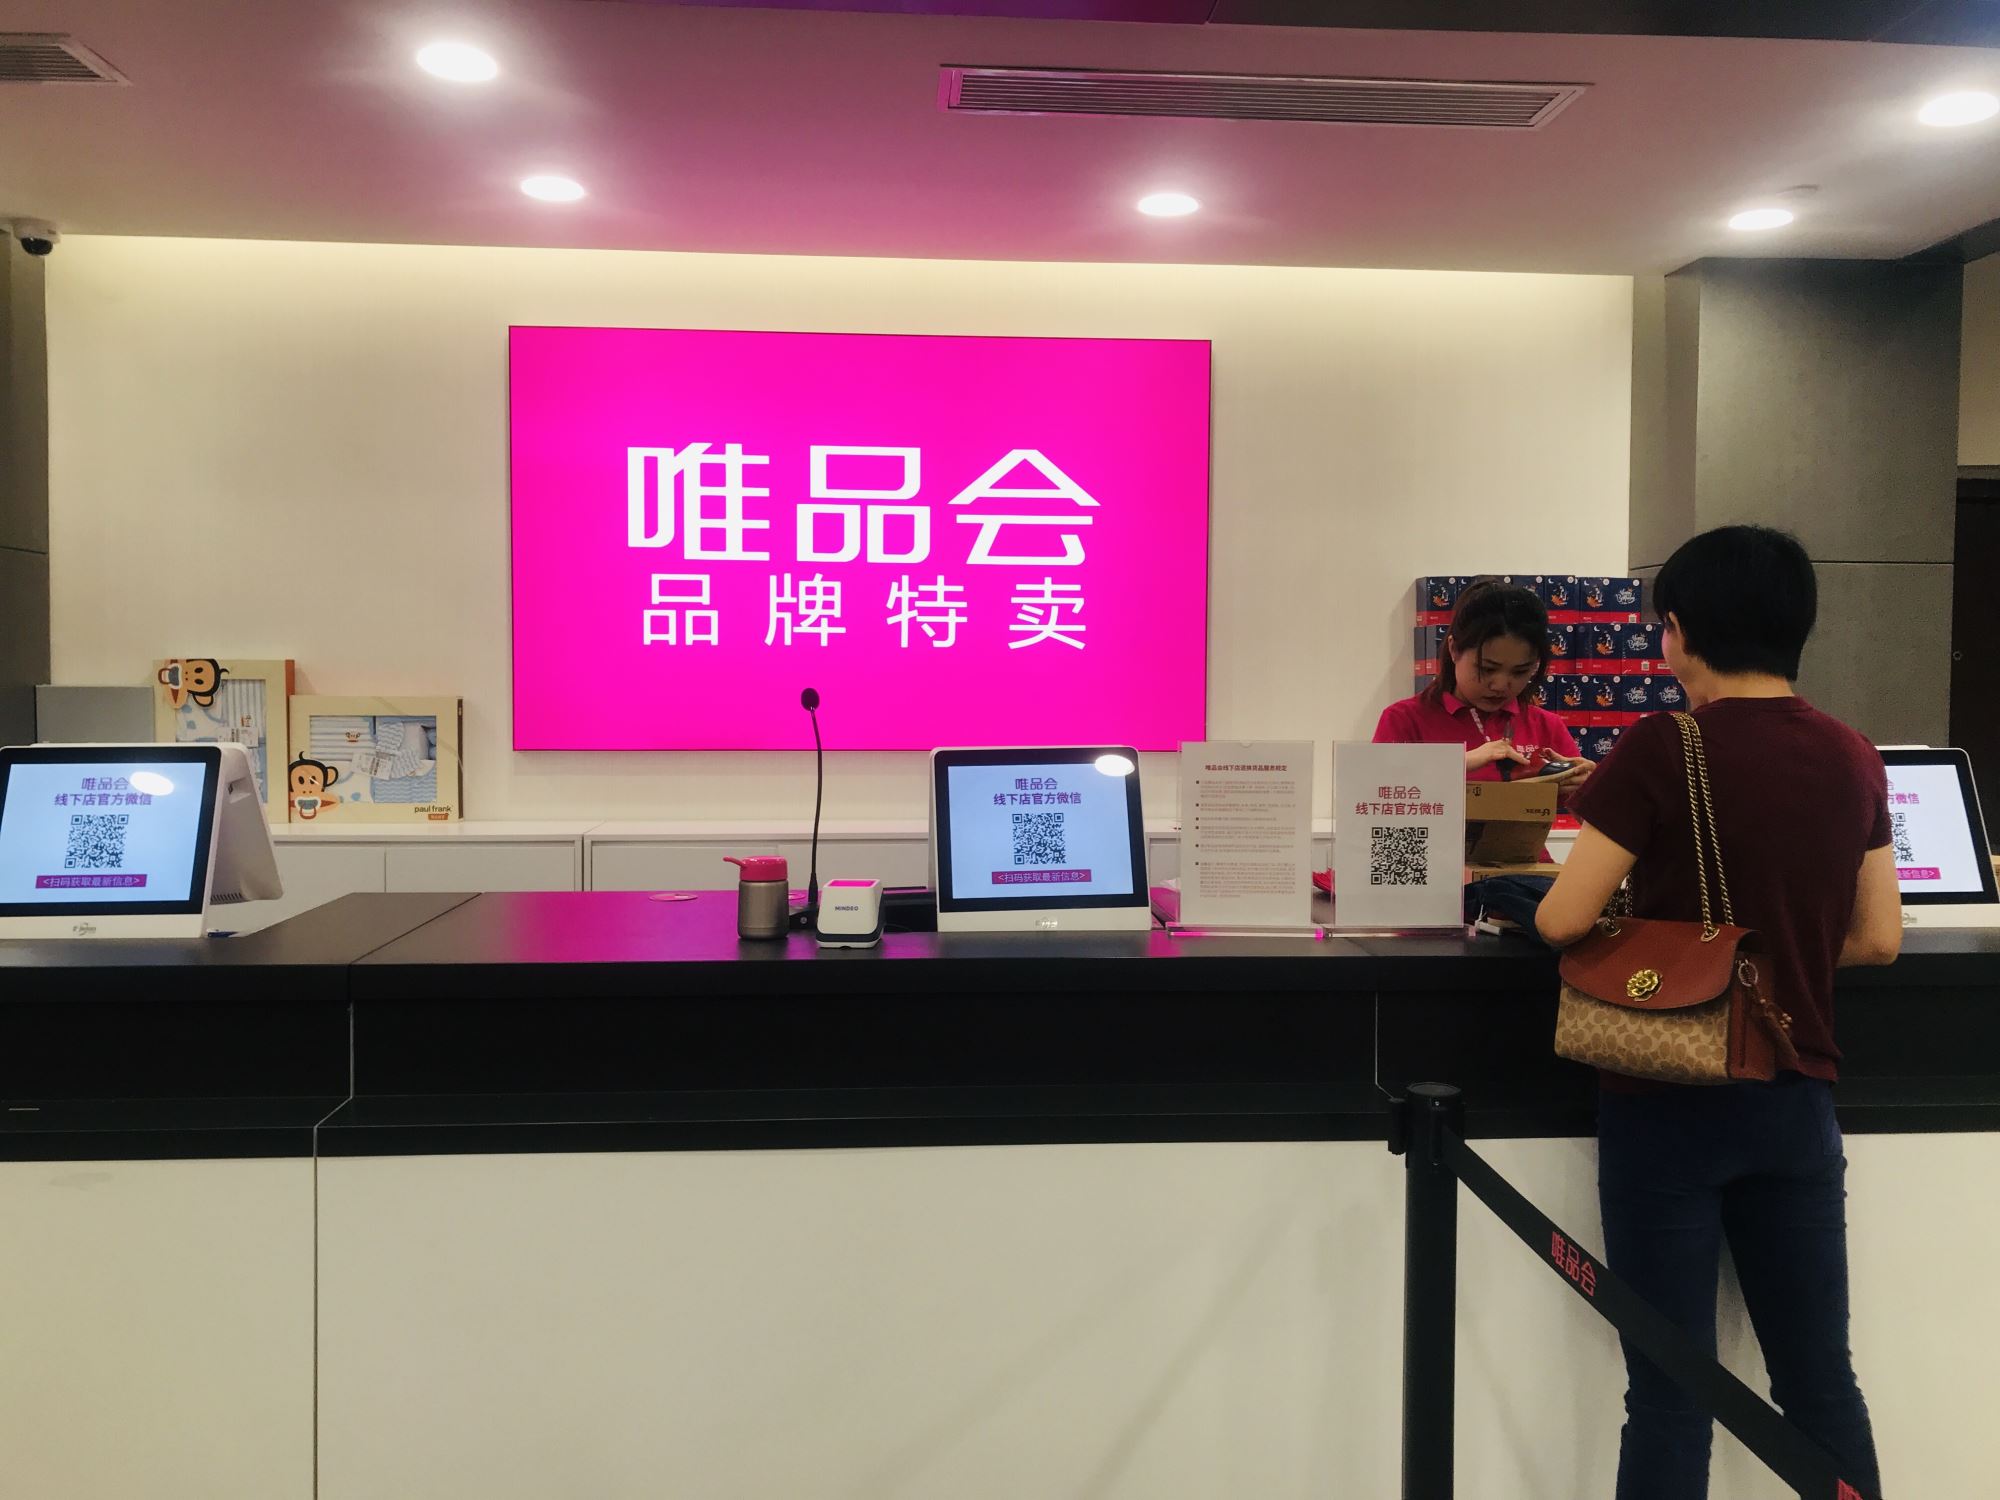 唯品会线下店入驻武汉金地广场于9月20日正式开业